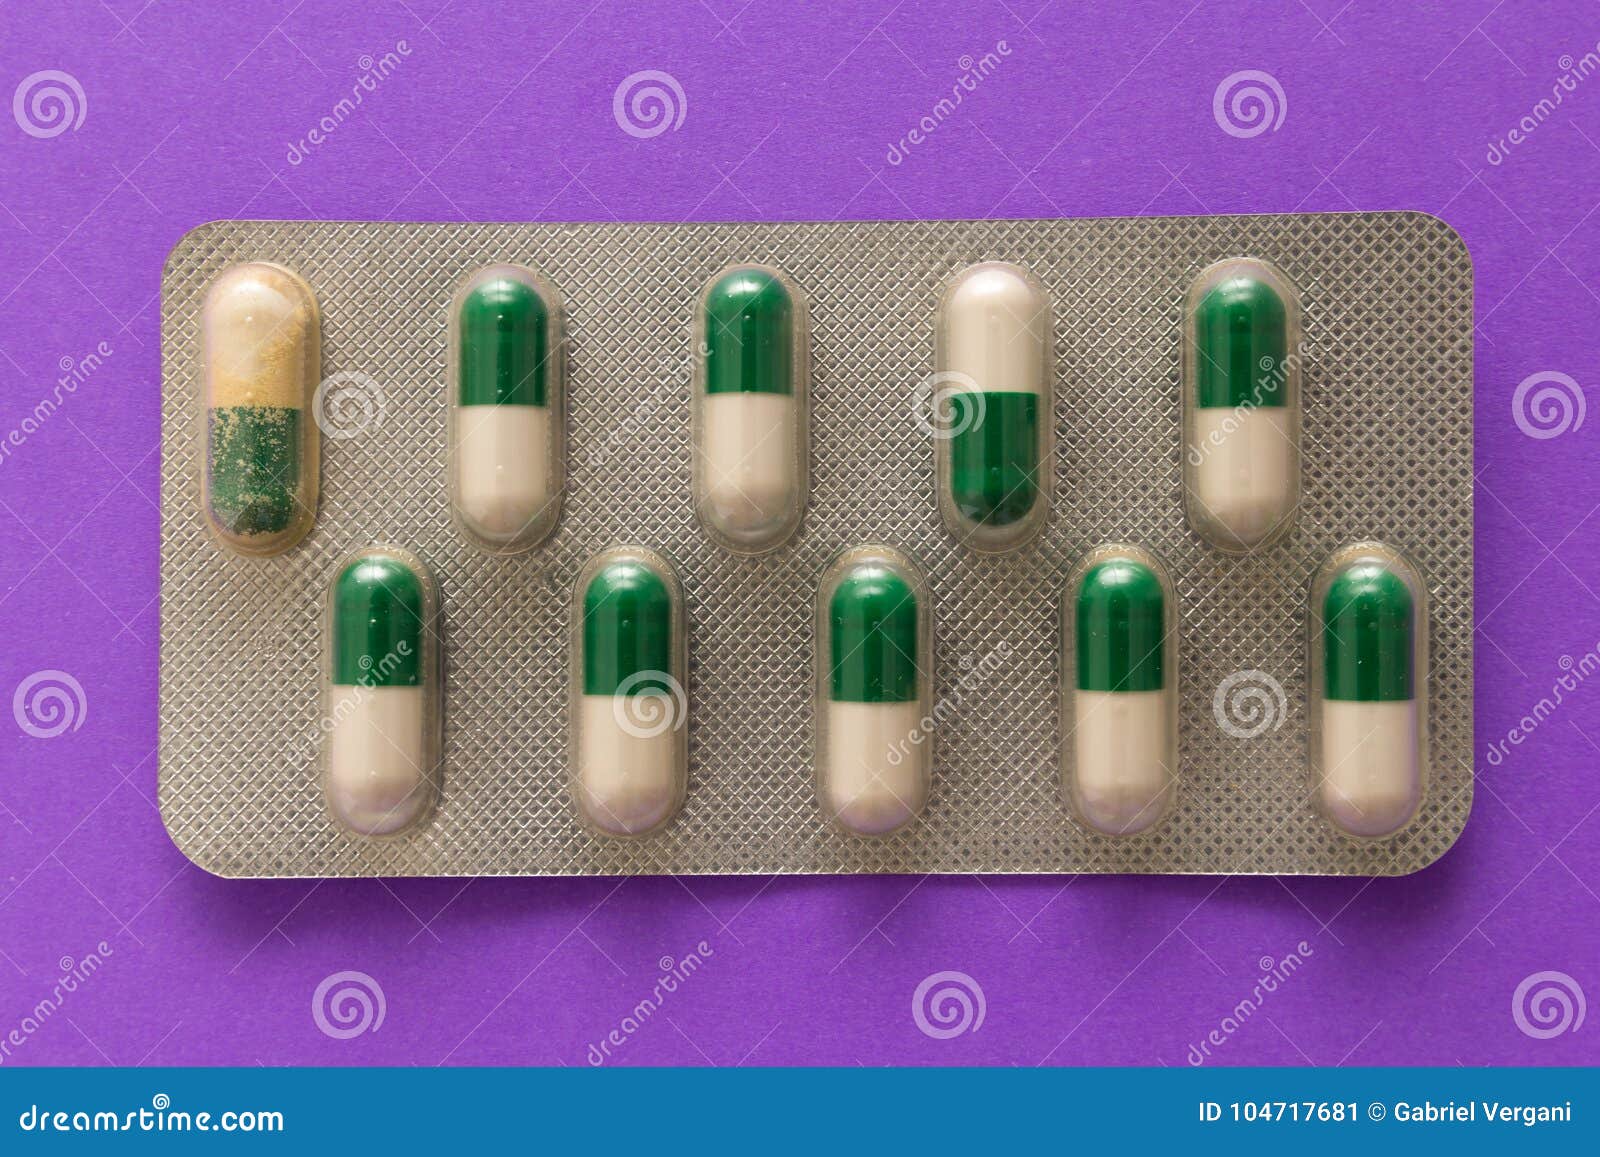 Антибиотик который пьют 3. Вьетнамские 6000 зеленые капсулы. Капсулы для кишечника зеленая упаковка. Капсулы бело зеленые. Антидепрессанты зеленые капсулы.